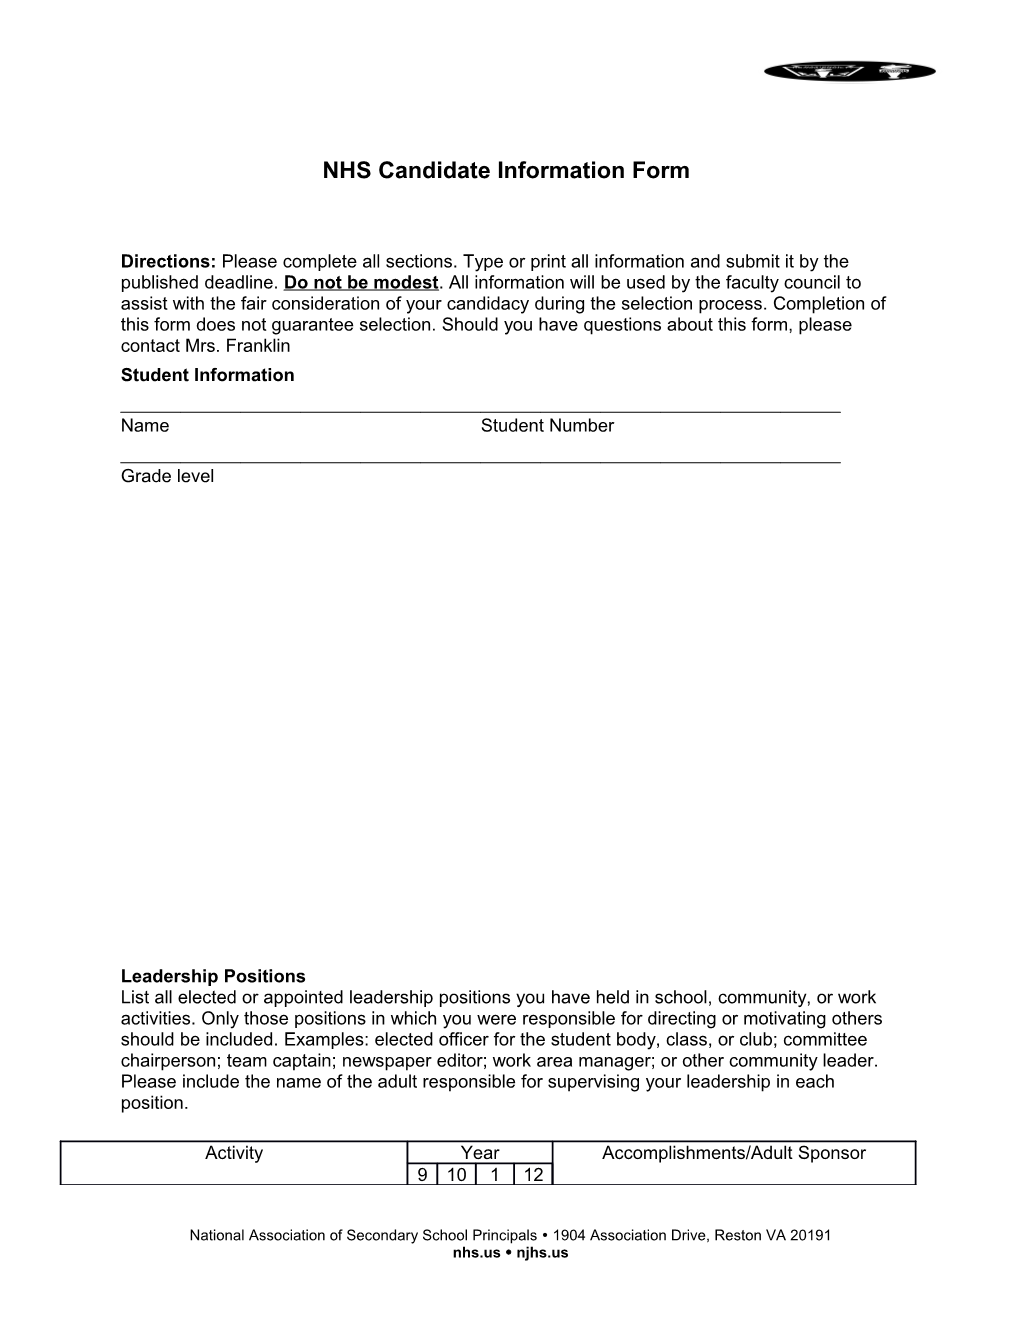 Nhscandidate Information Form